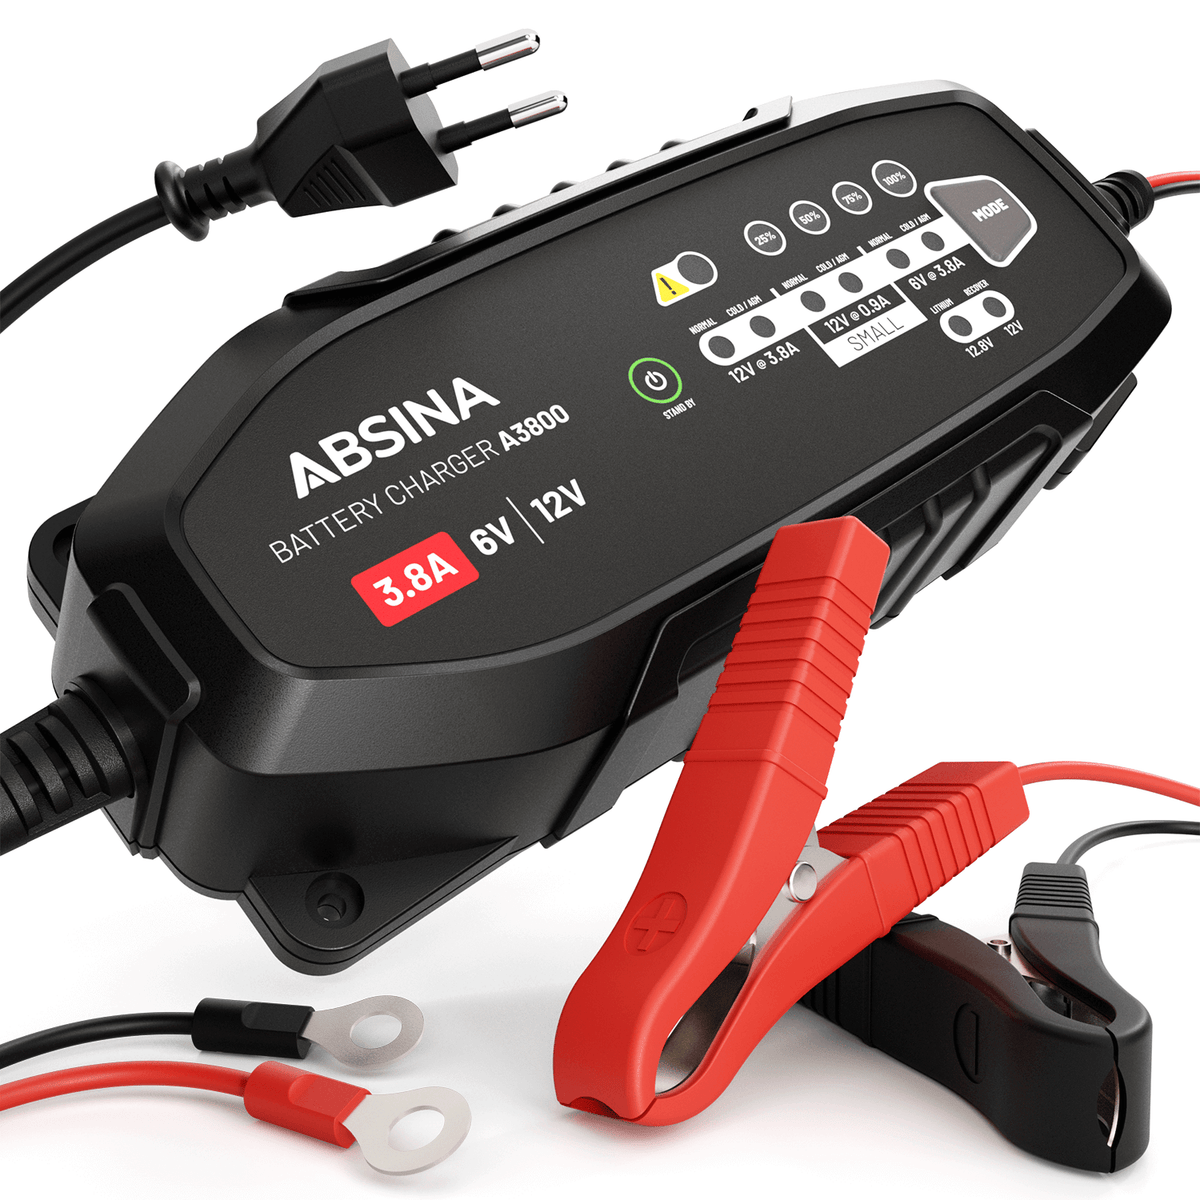 3V Batterie kompatibel A3 A4 A5 A6 A8 TT - Akkus & Batterien für jeden Zweck